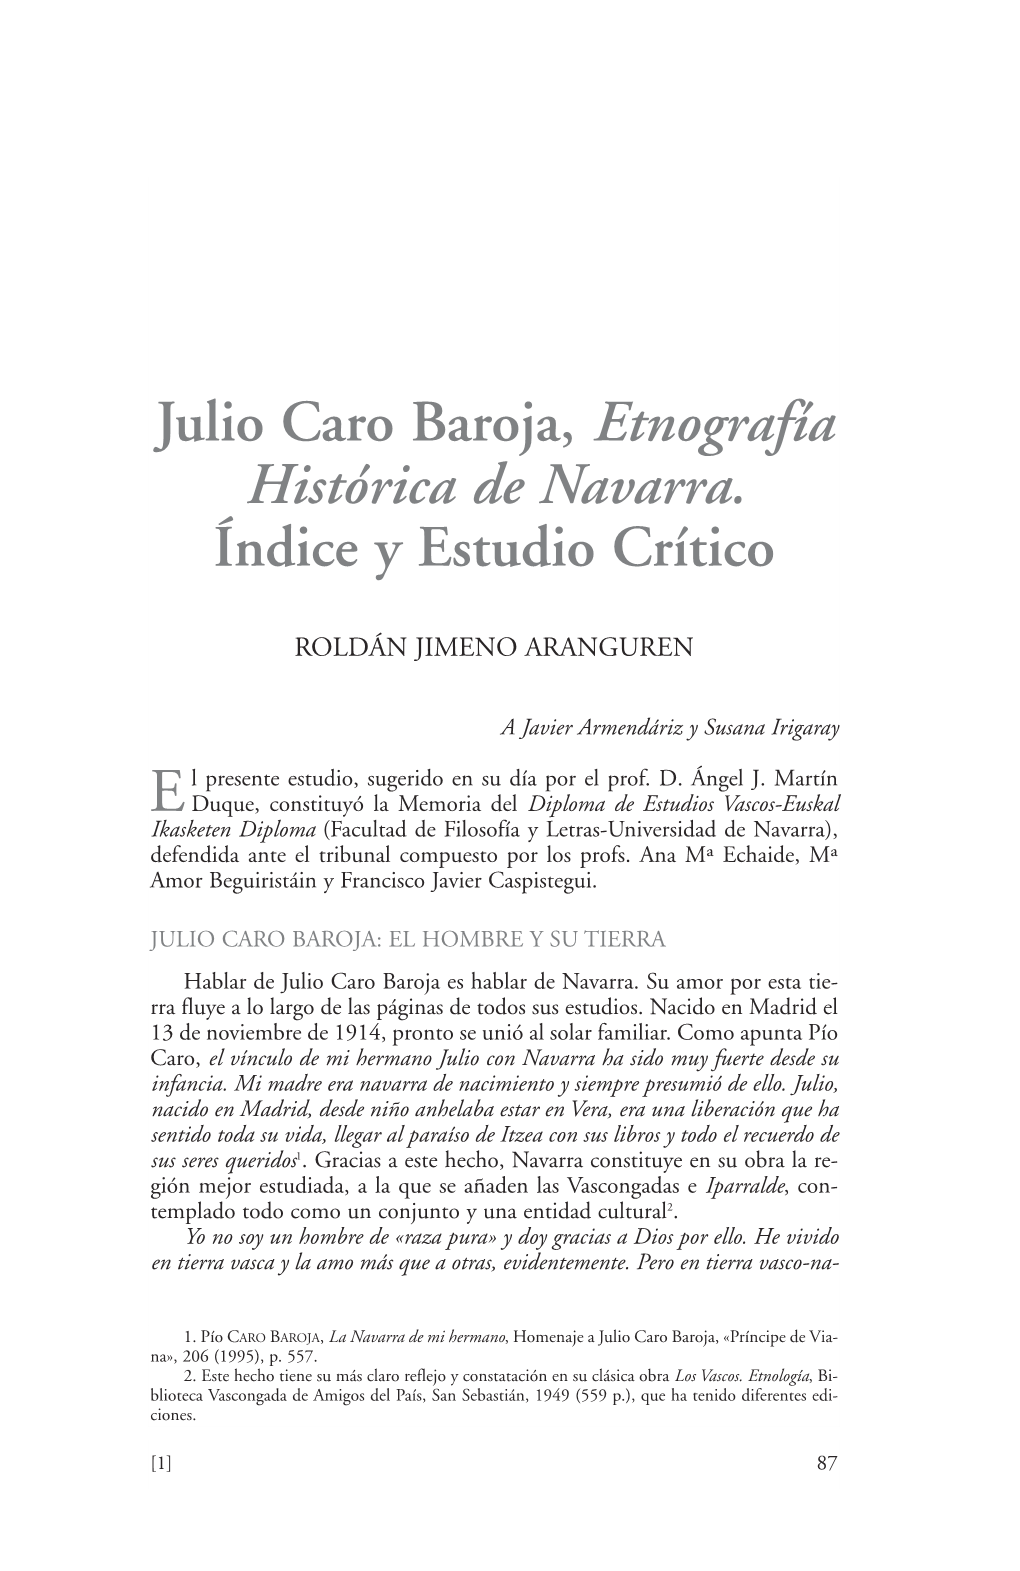 Julio Caro Baroja, Etnografía Histórica De Navarra. Indice Y